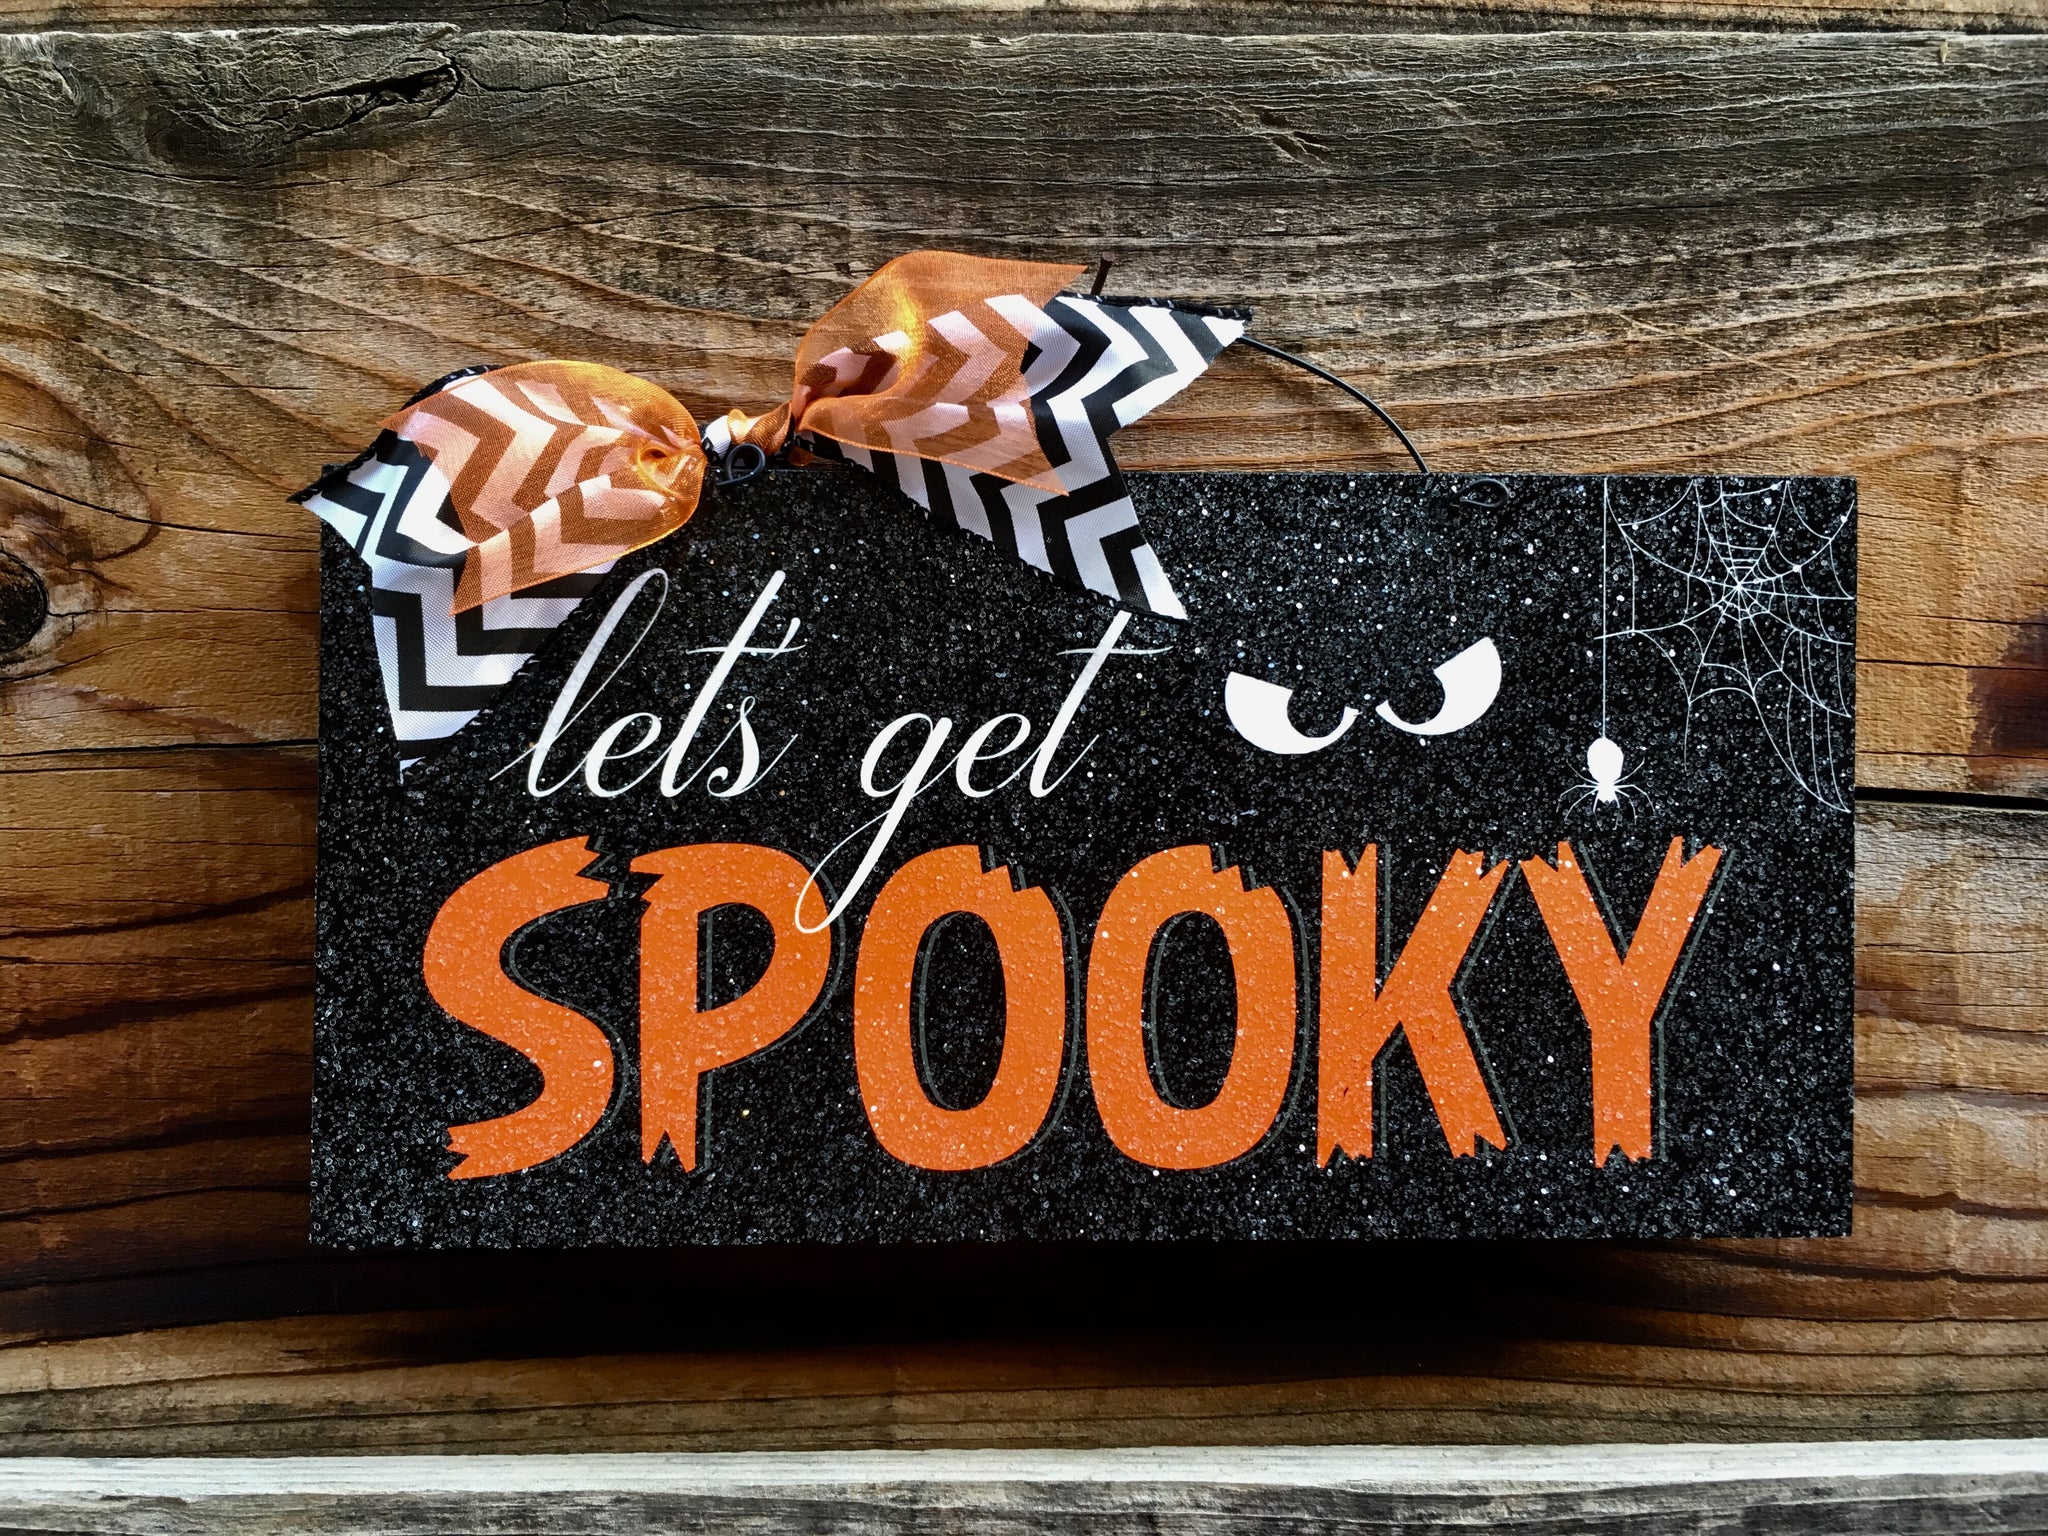 Let’s get Spooky. Halloween sign.